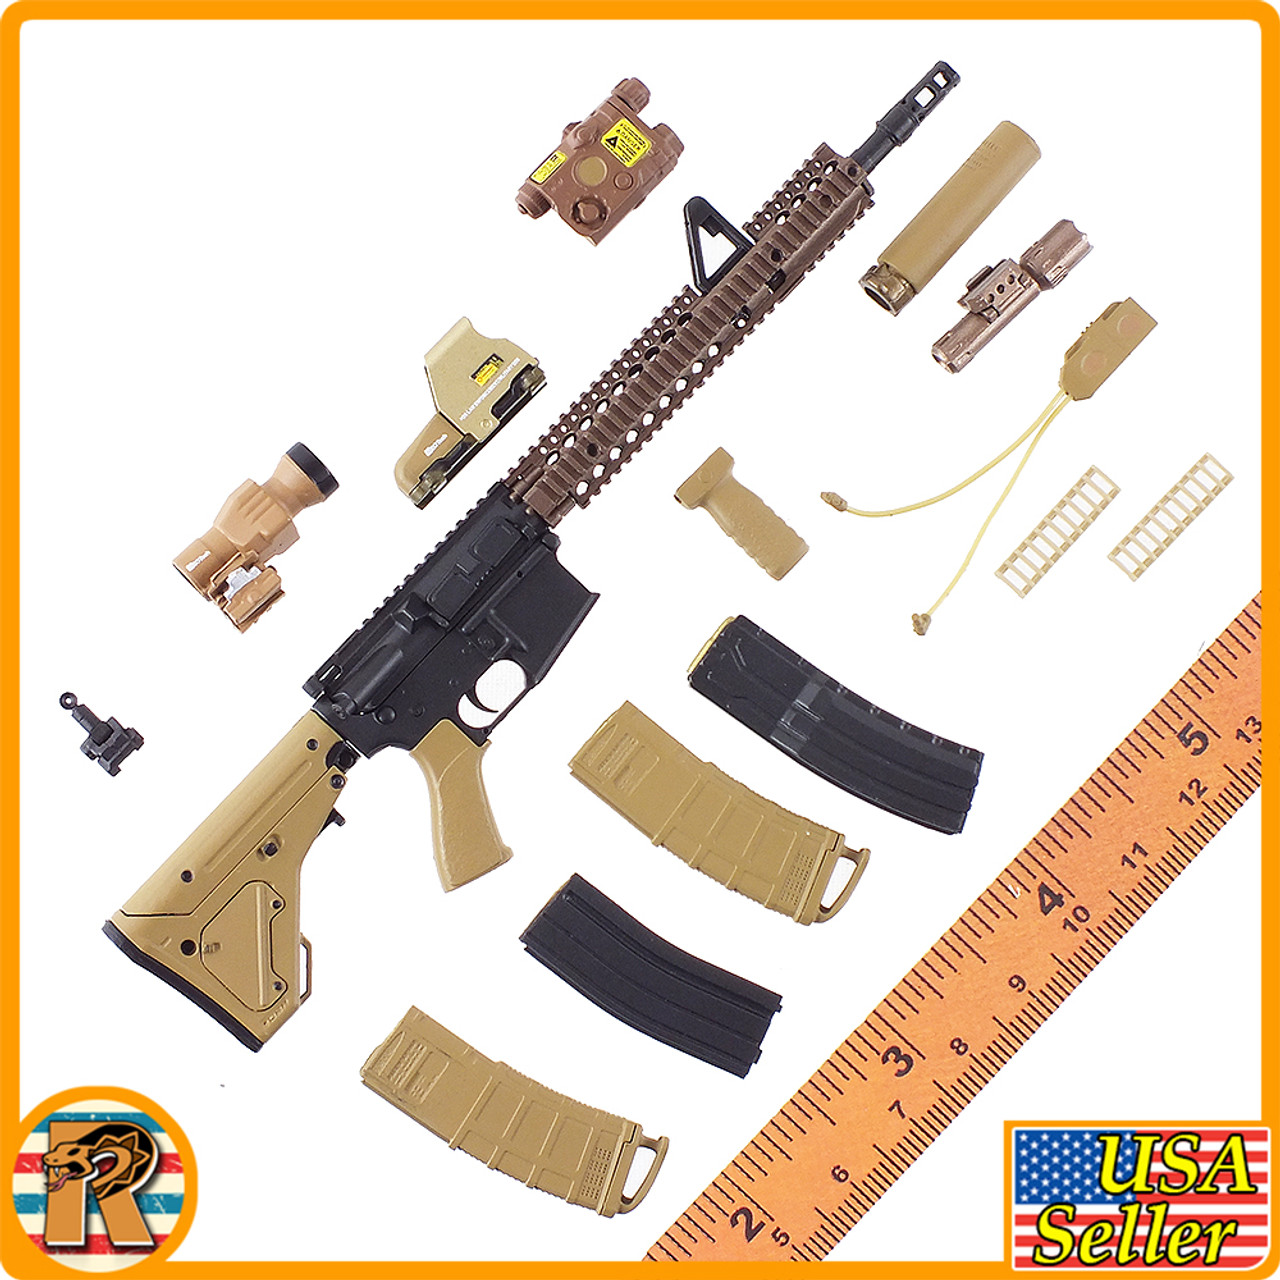 Special Forces Weapons D - Colt Assault Rifle Set C #3 - 1/6 Scale -